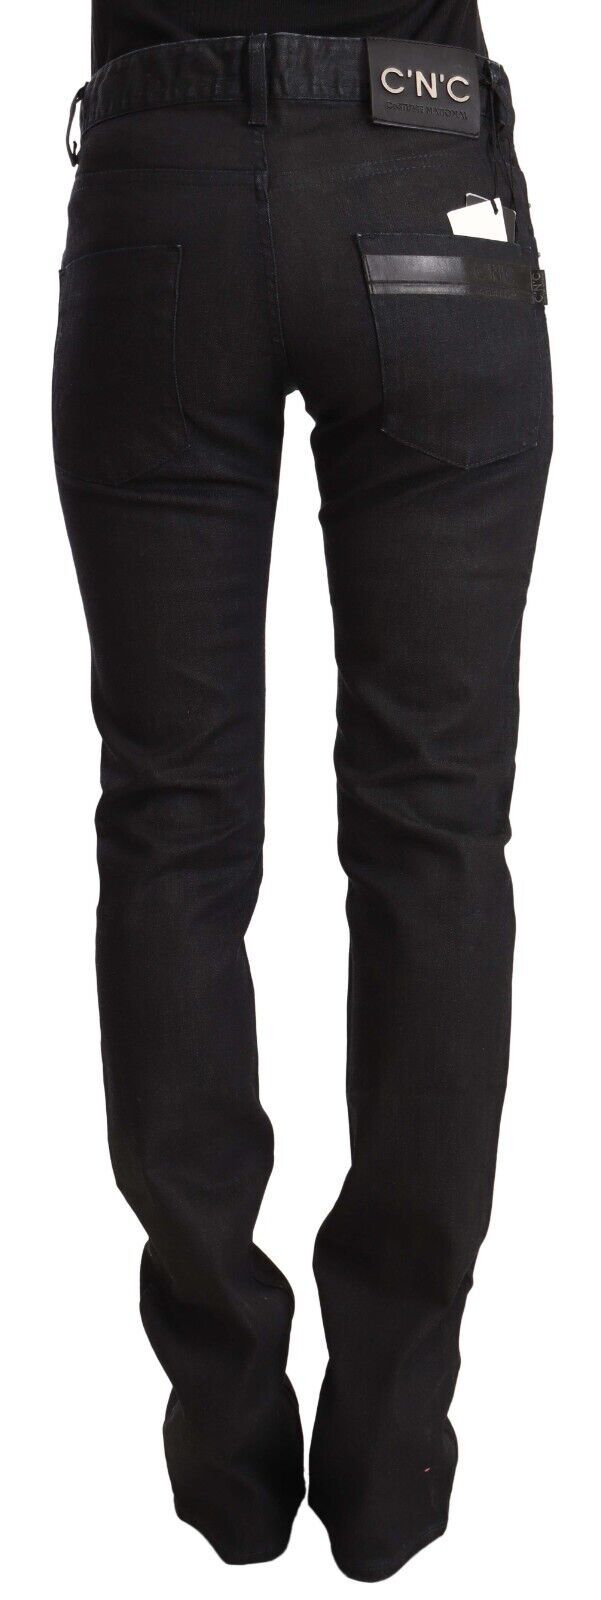 Sleek Mid-Waist Slim-Fit Black Jeans